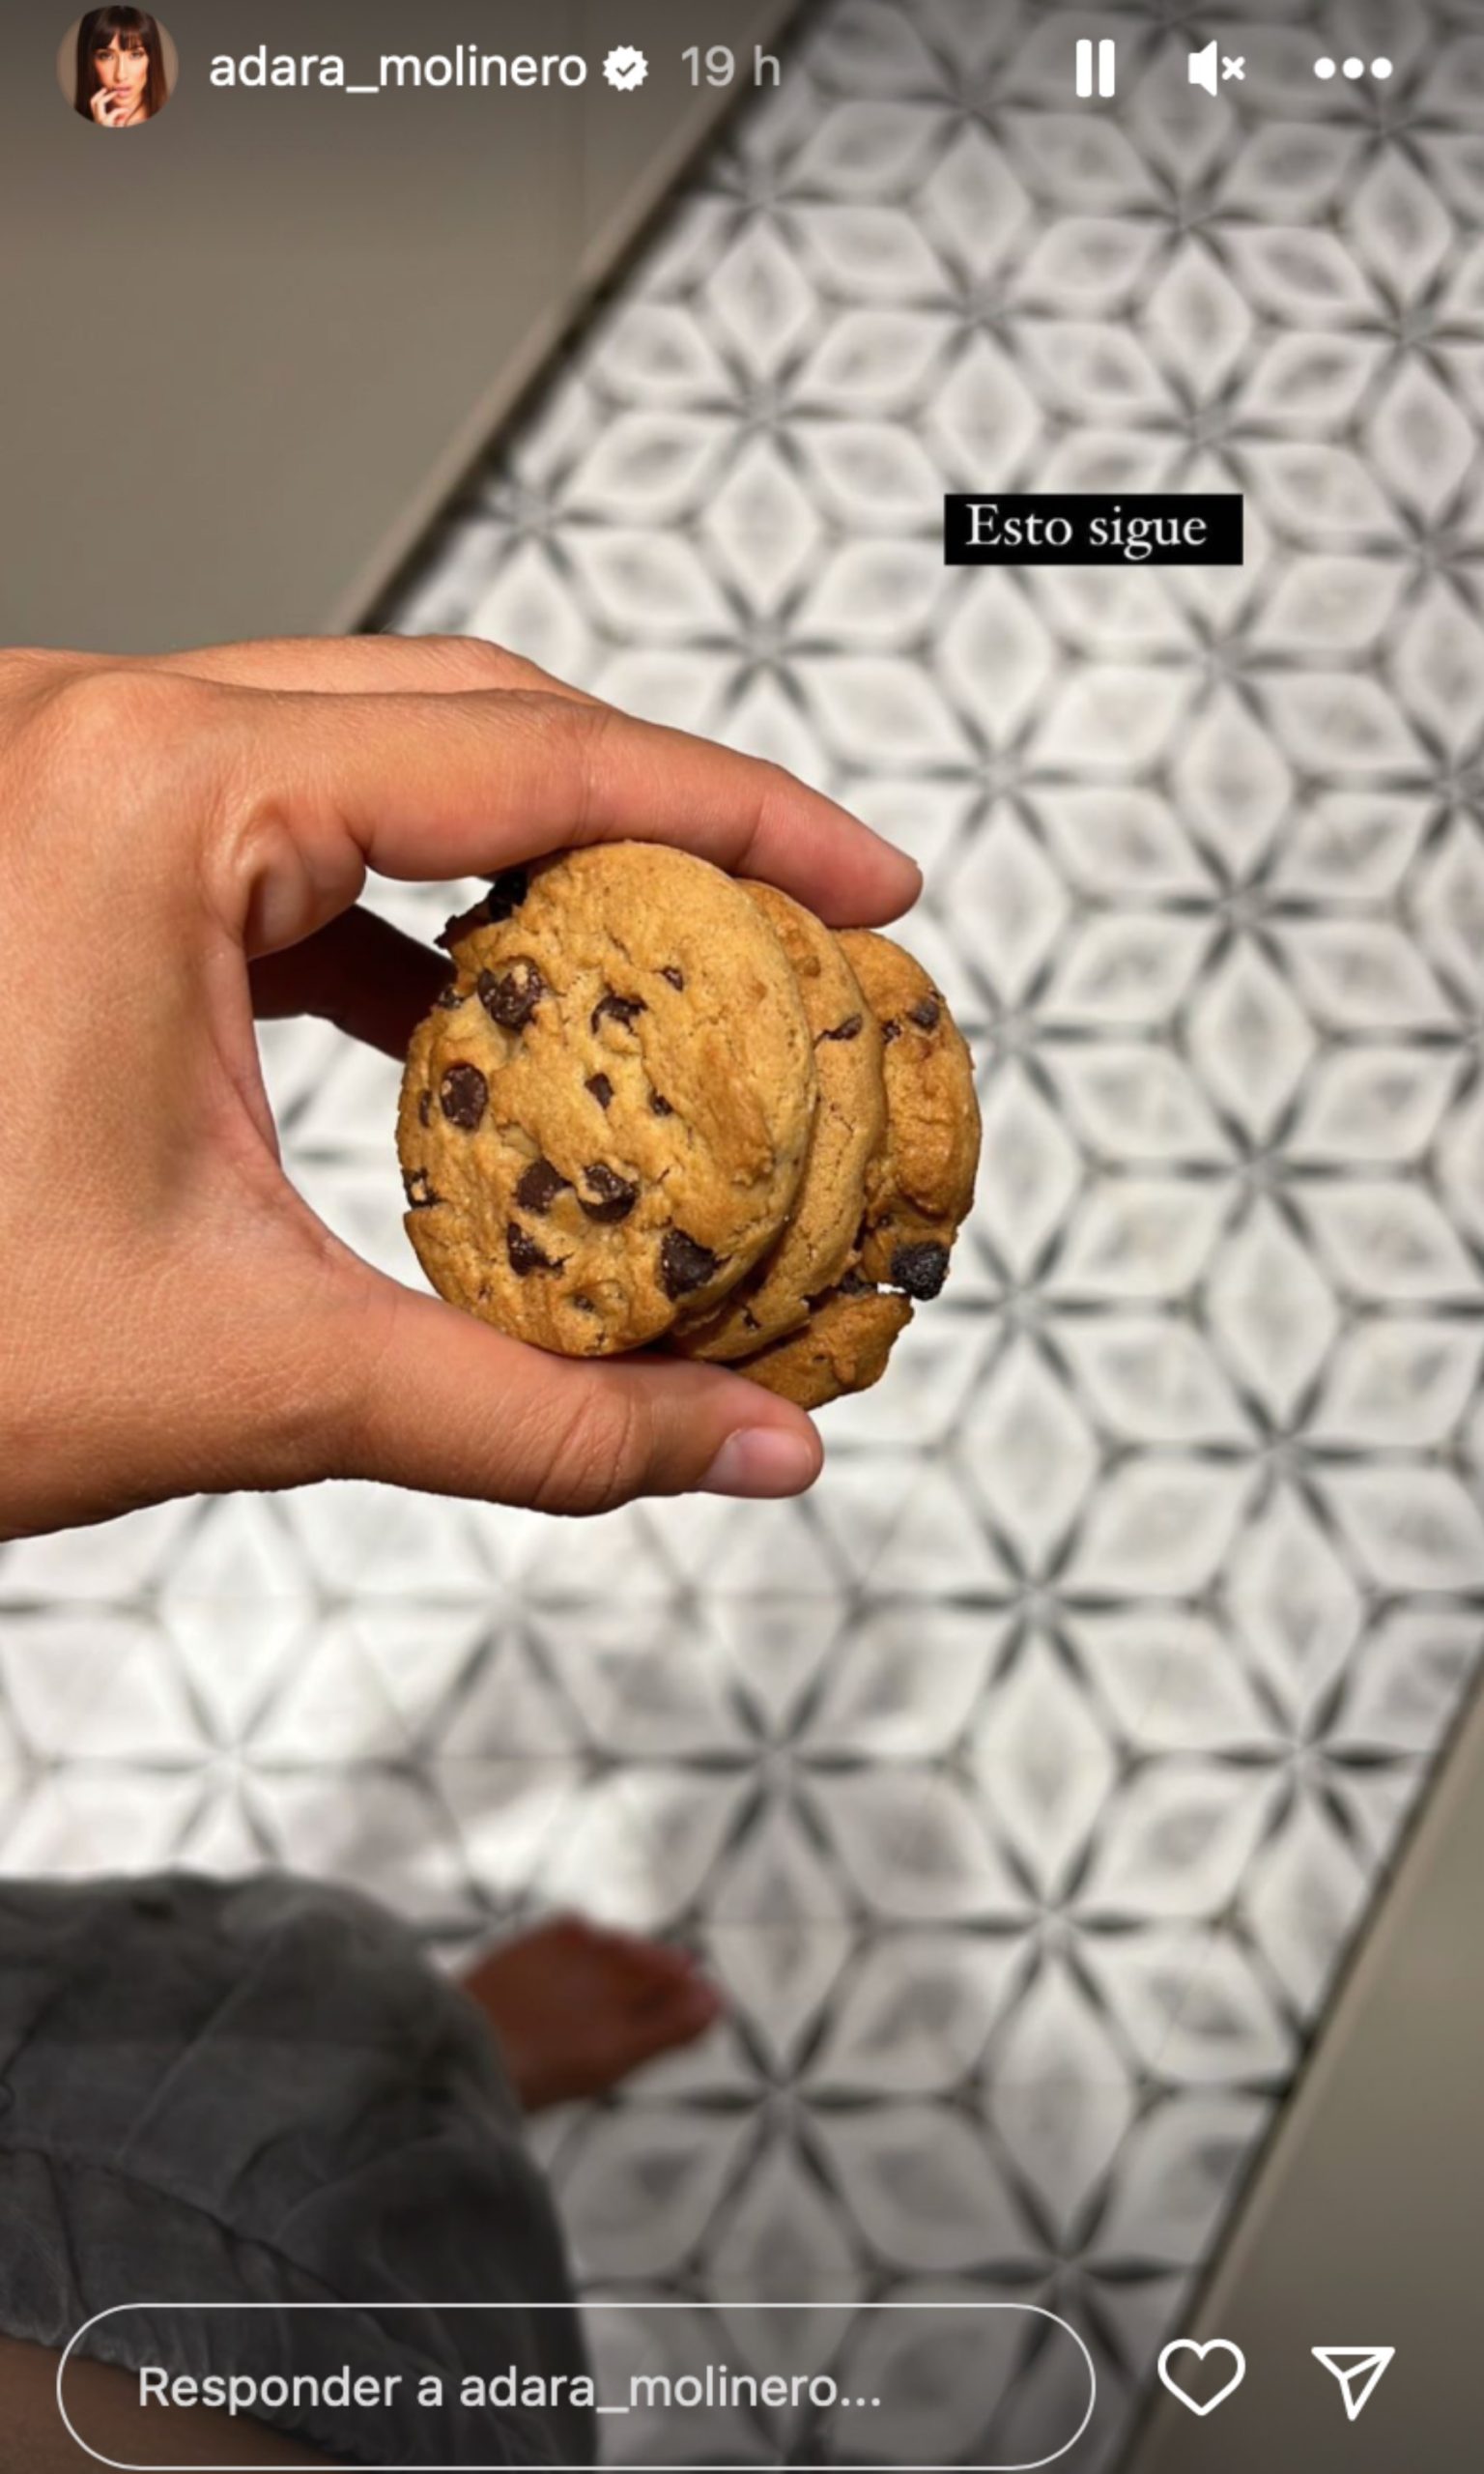 Mano de Adara Molinero sujetando unas galletas/ Instagram